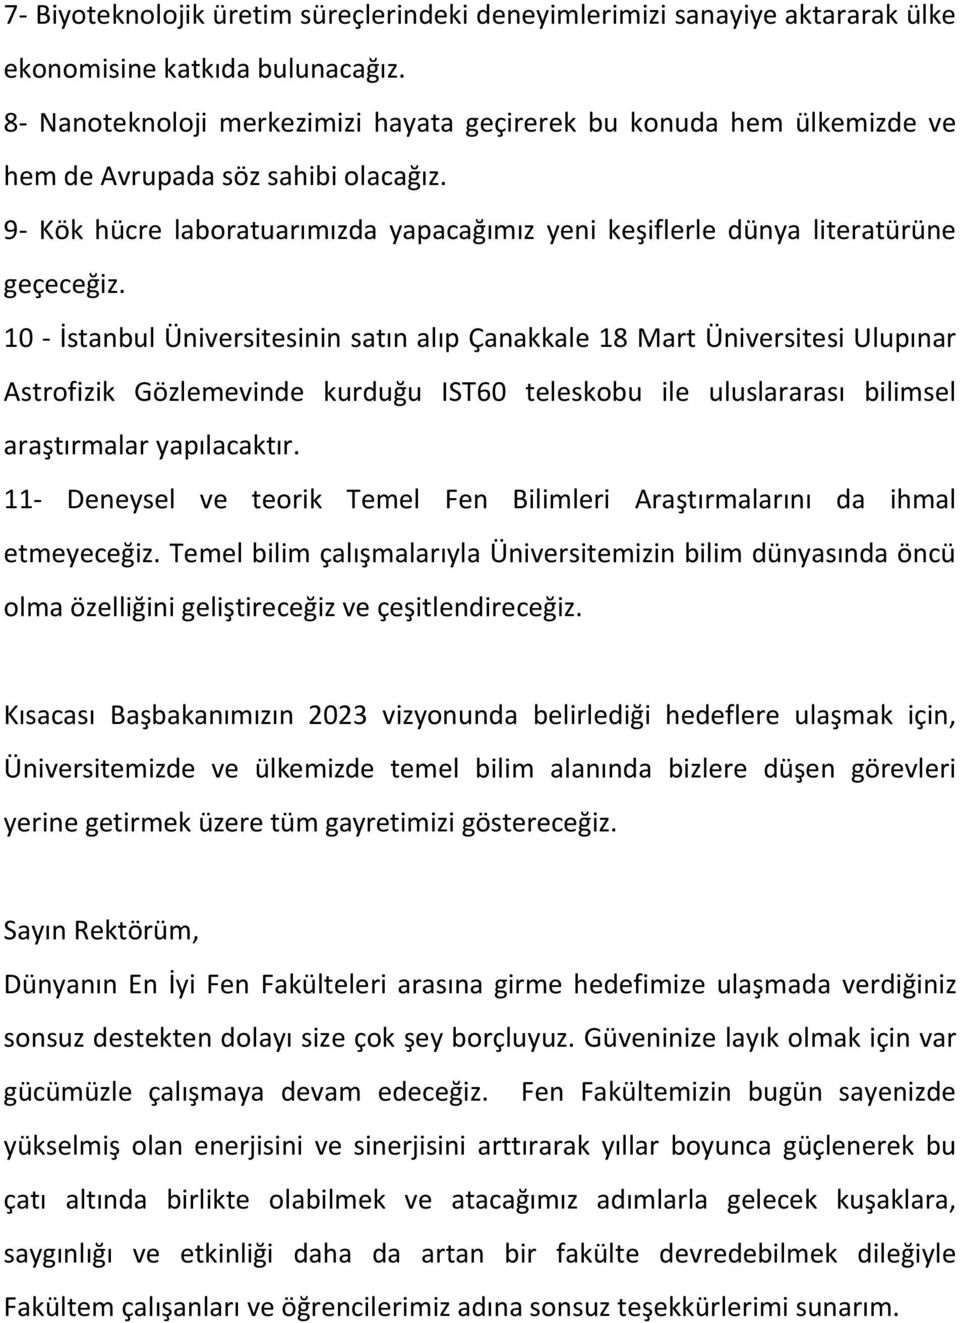 10 - İstanbul Üniversitesinin satın alıp Çanakkale 18 Mart Üniversitesi Ulupınar Astrofizik Gözlemevinde kurduğu IST60 teleskobu ile uluslararası bilimsel araştırmalar yapılacaktır.